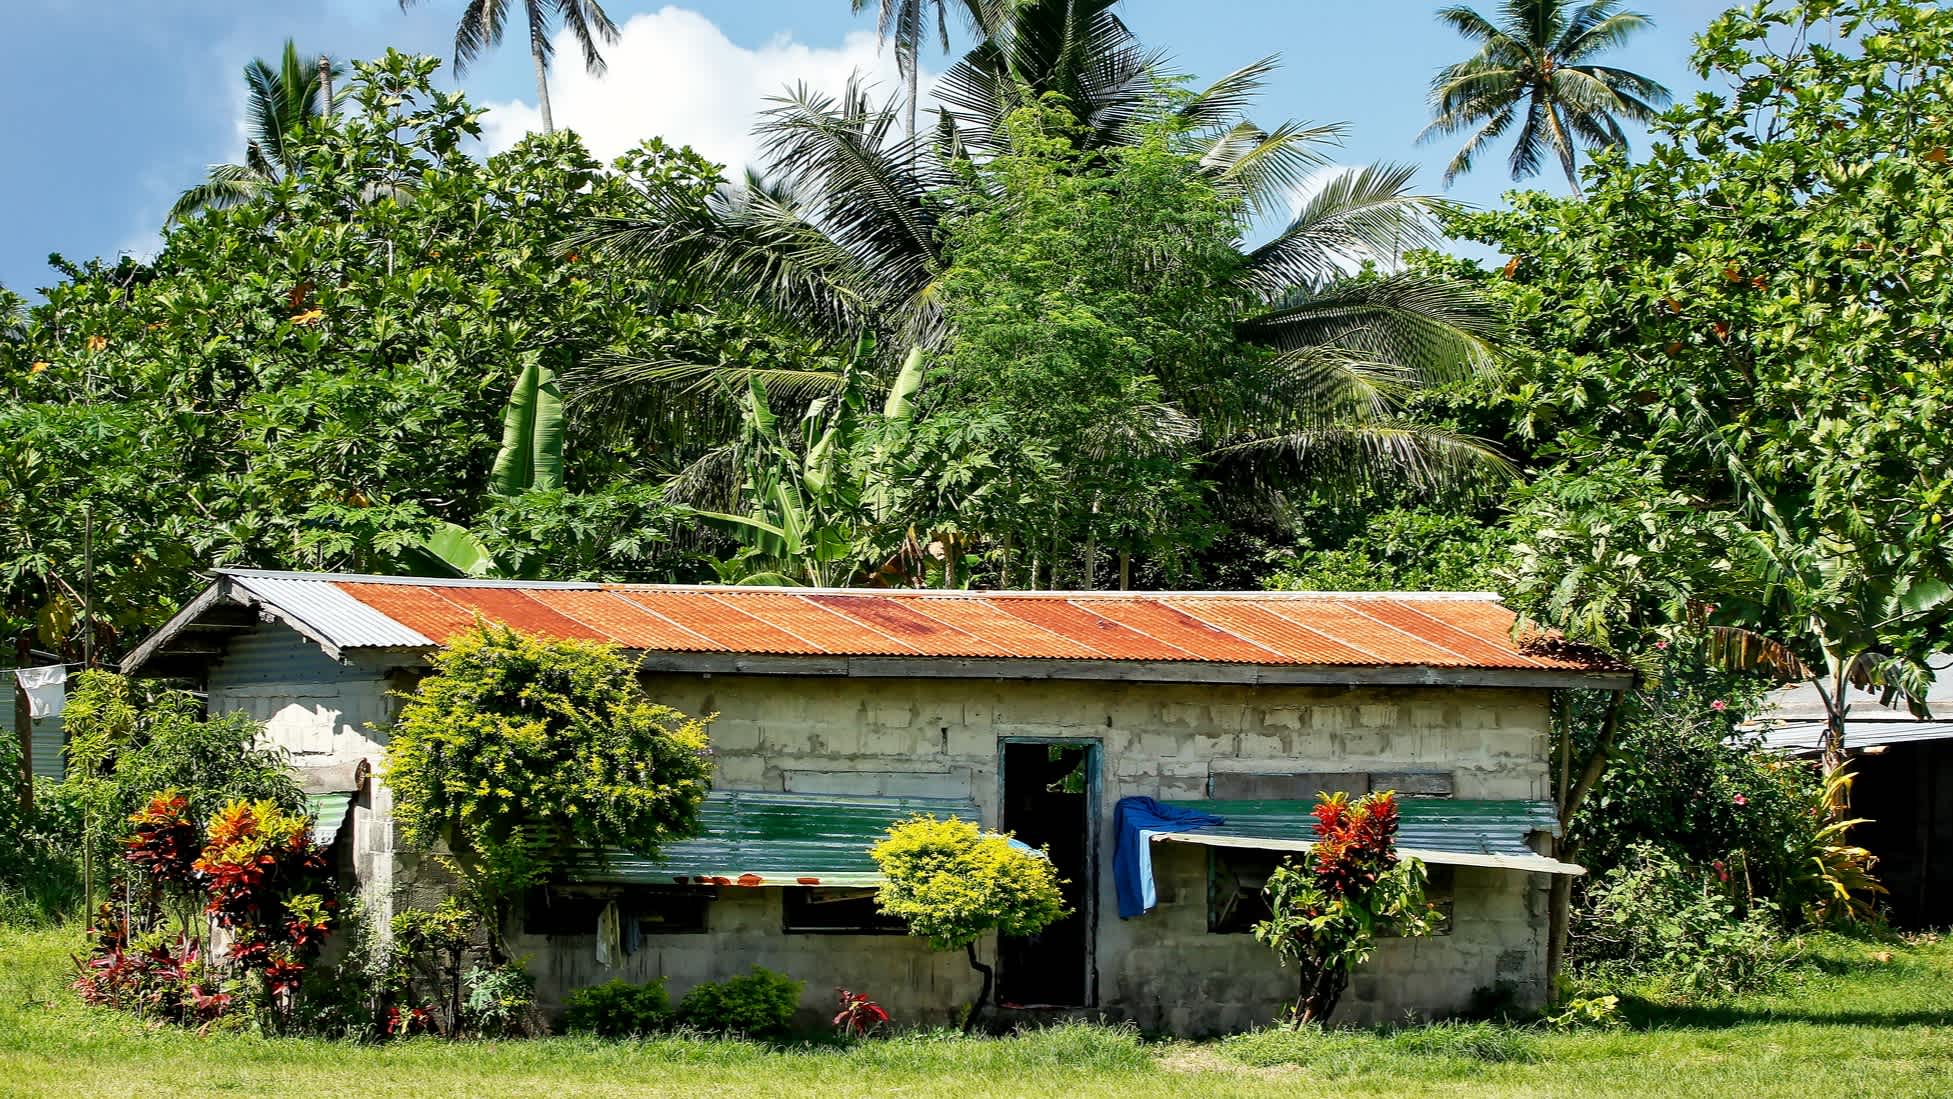 Fidschianisches Dorfhaus aus Stein vor Palmen